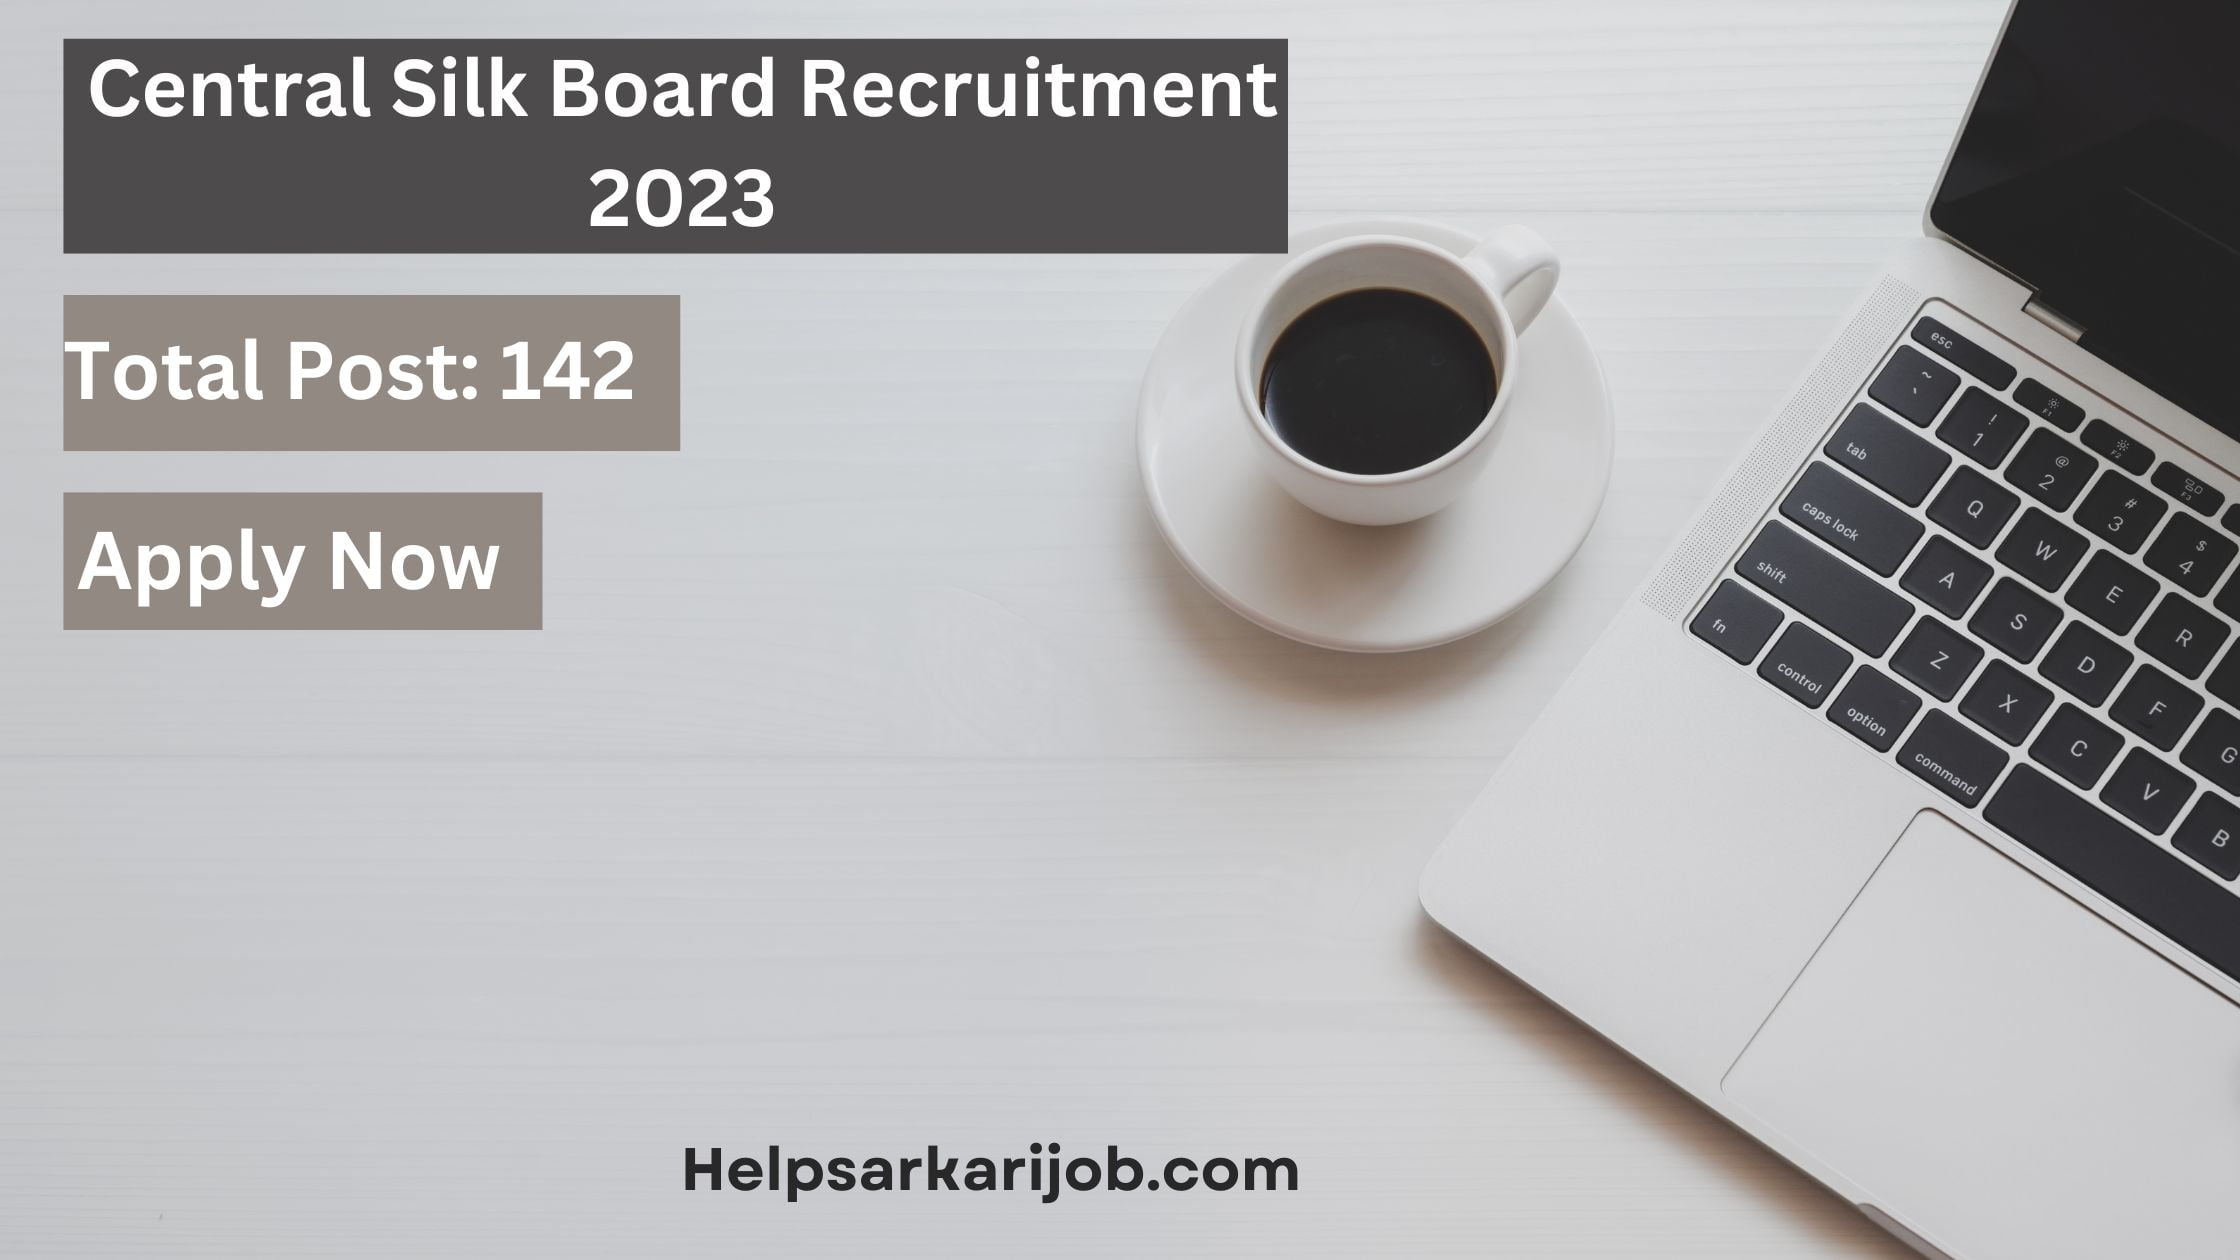 Central Silk Board Recruitment 2023